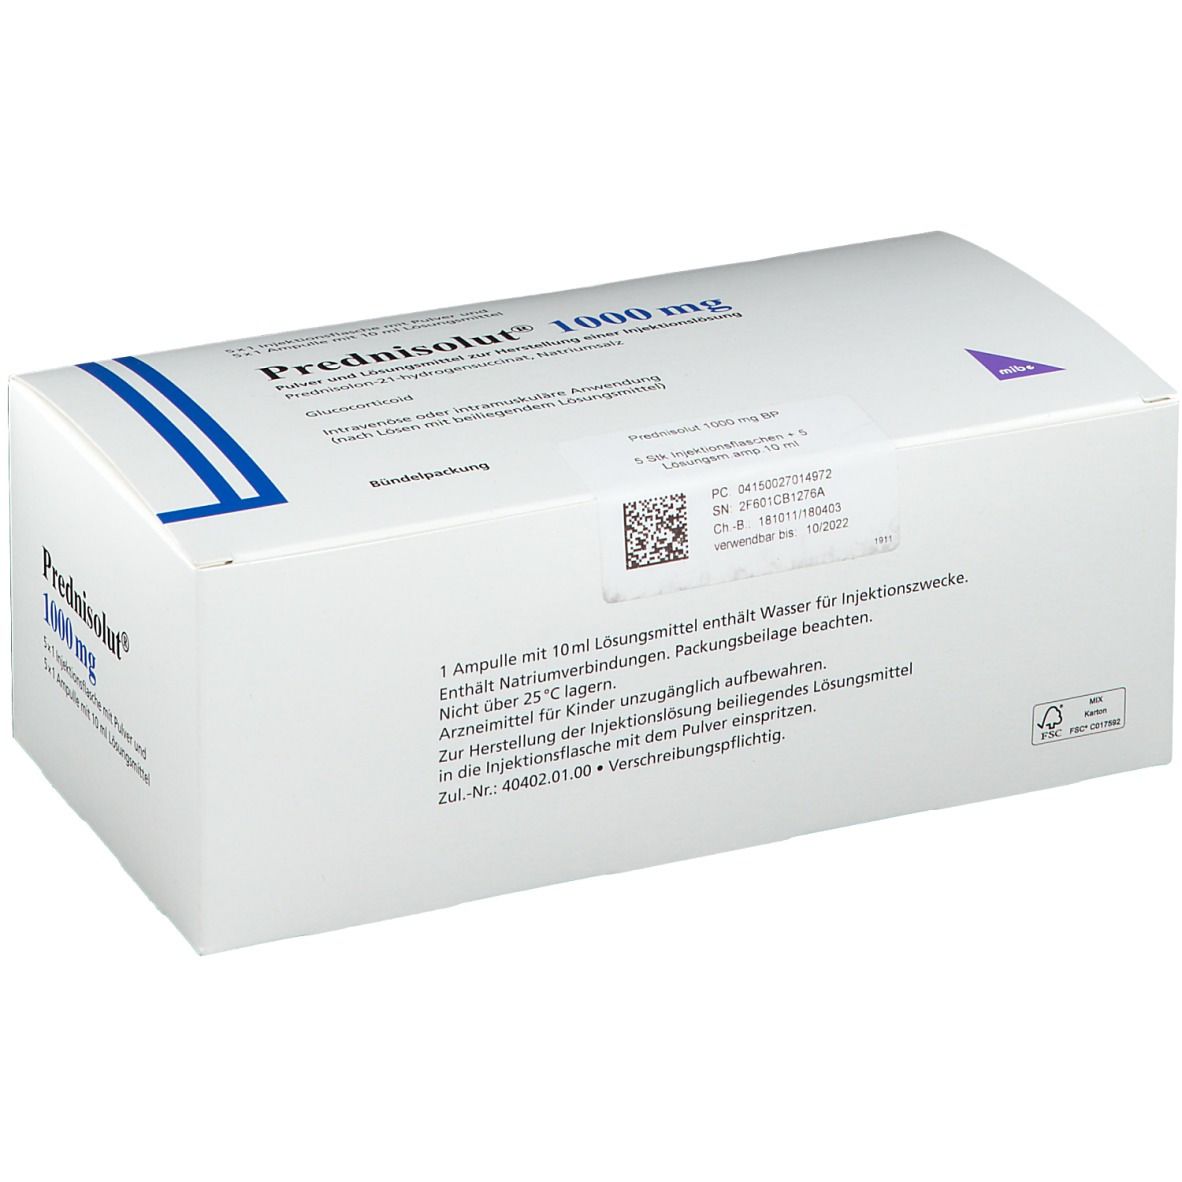 Prednisolut® 1000 mg